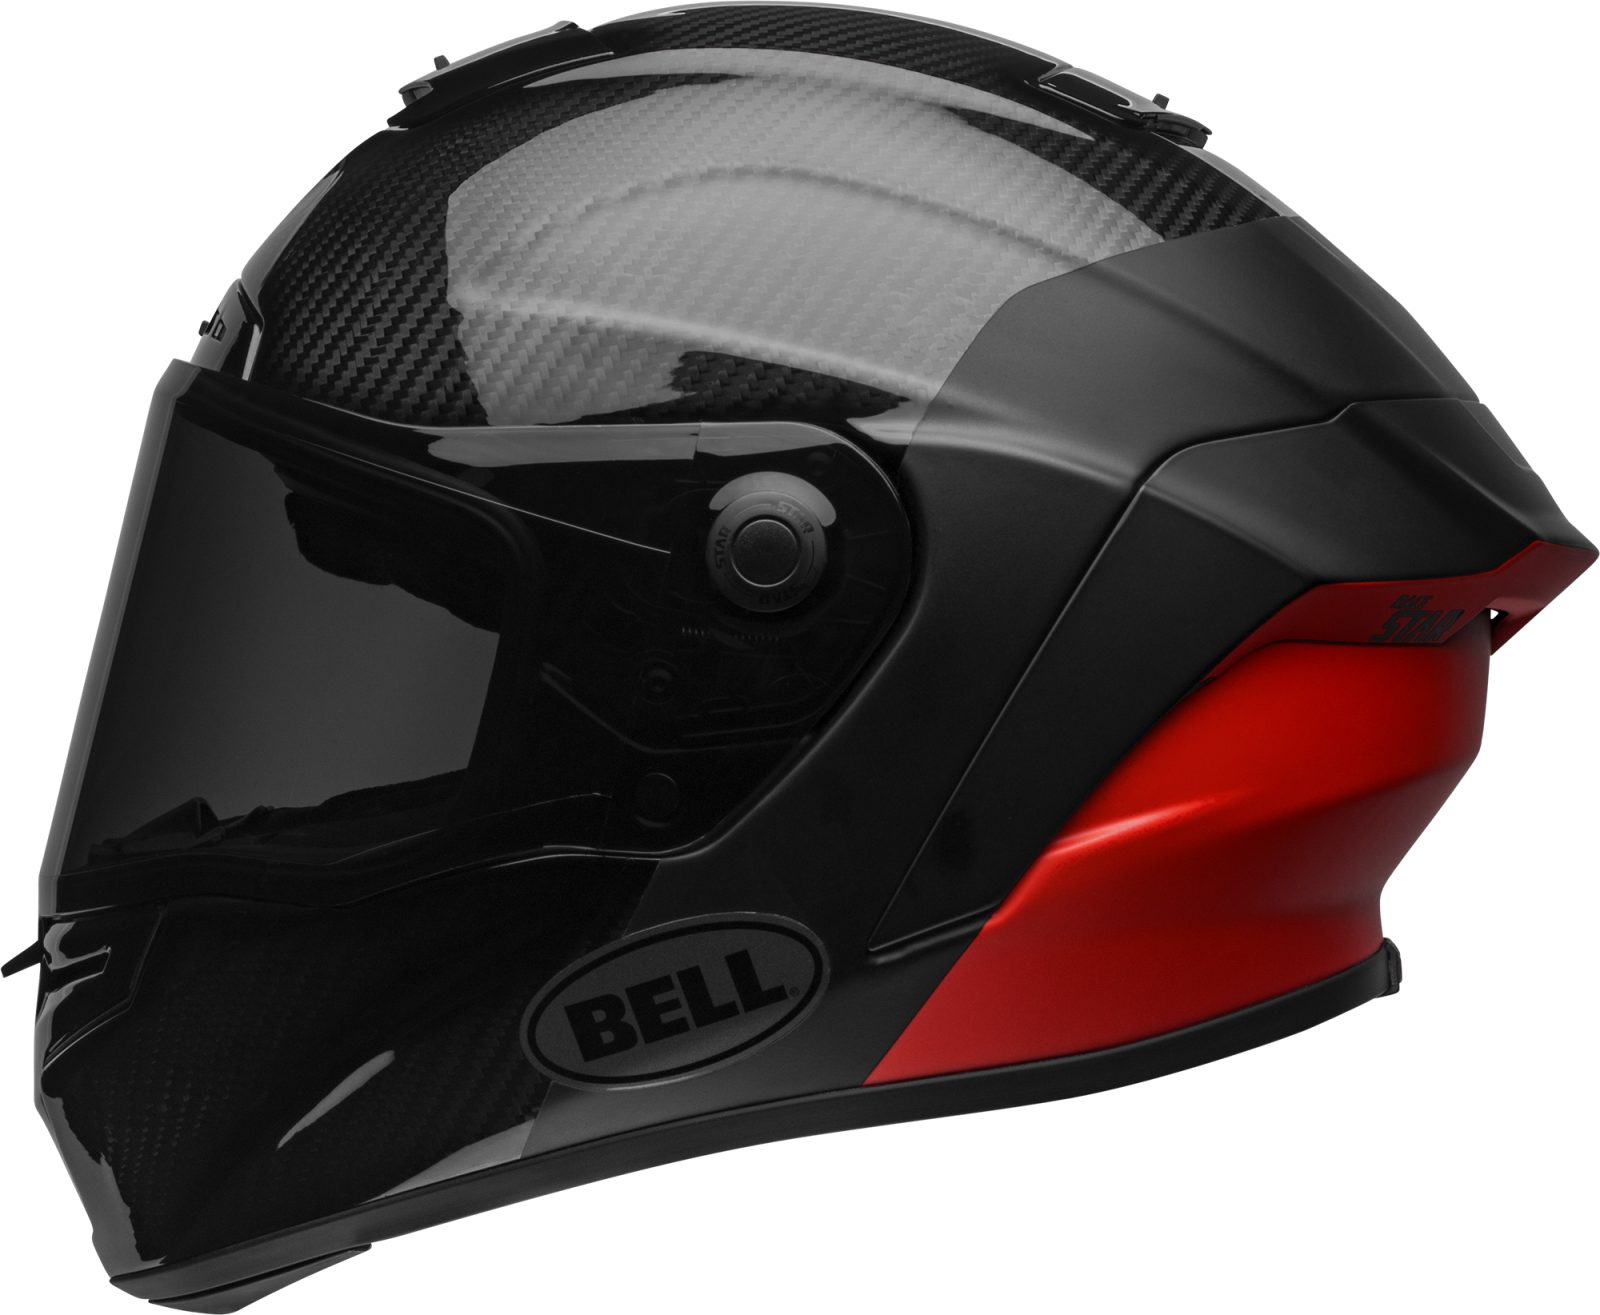 bell-race-star-flex-dlx-street-helmet-carbon-lux-matte-gloss-black-red-left - Australian 